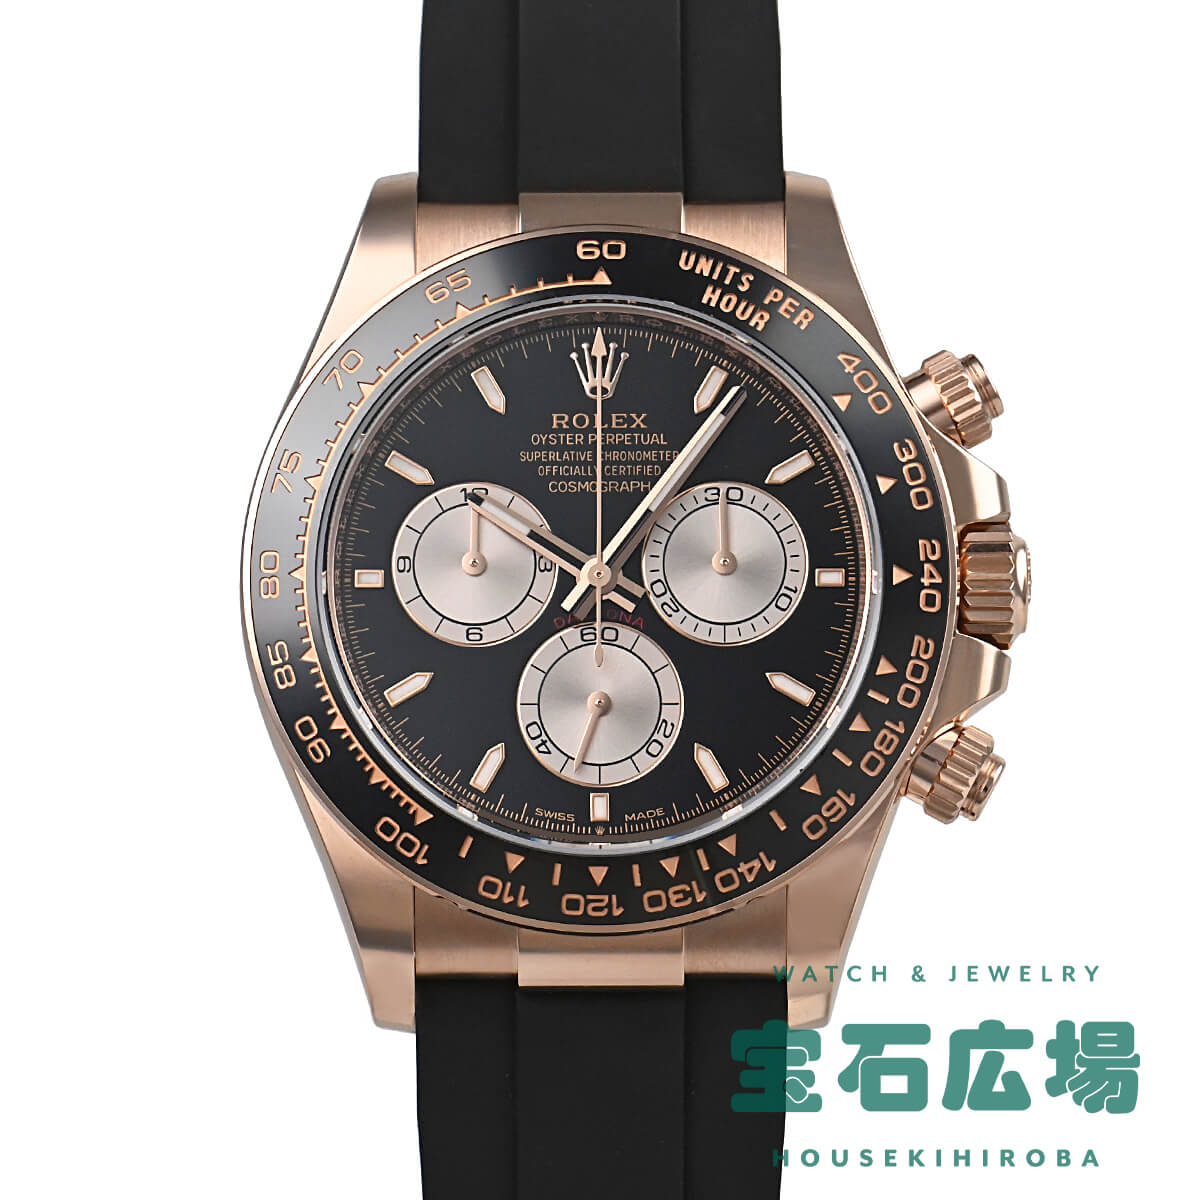 ロレックス ROLEX コスモグラフ デイトナ 126515LN【新品】メンズ 腕時計 送料無料